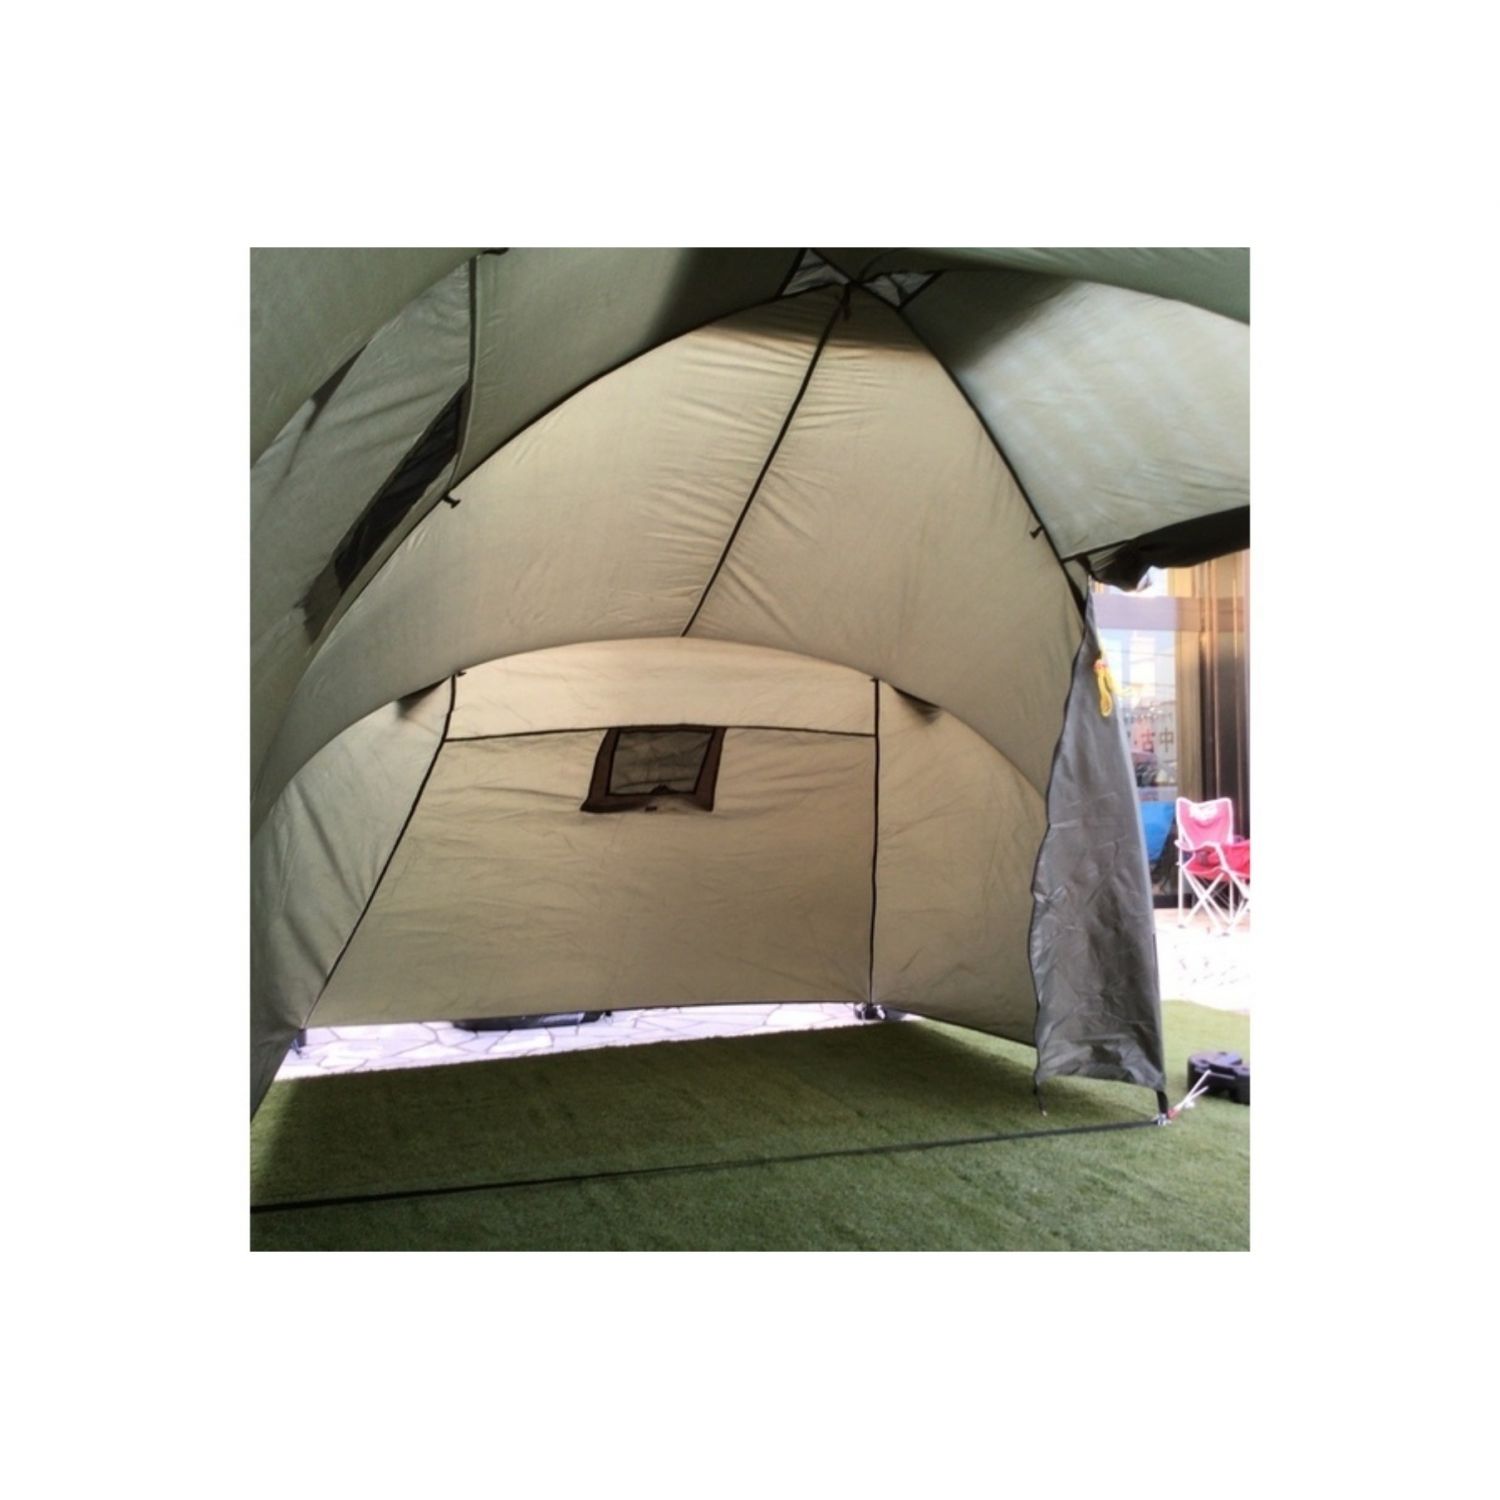 MIL-TEC (ミルテック) ツールームテント 3人用インナーテント×2付 ポール非純正 ※設営方法要確認 6人用テント  約560×220×160cm 3～4人用｜トレファクONLINE